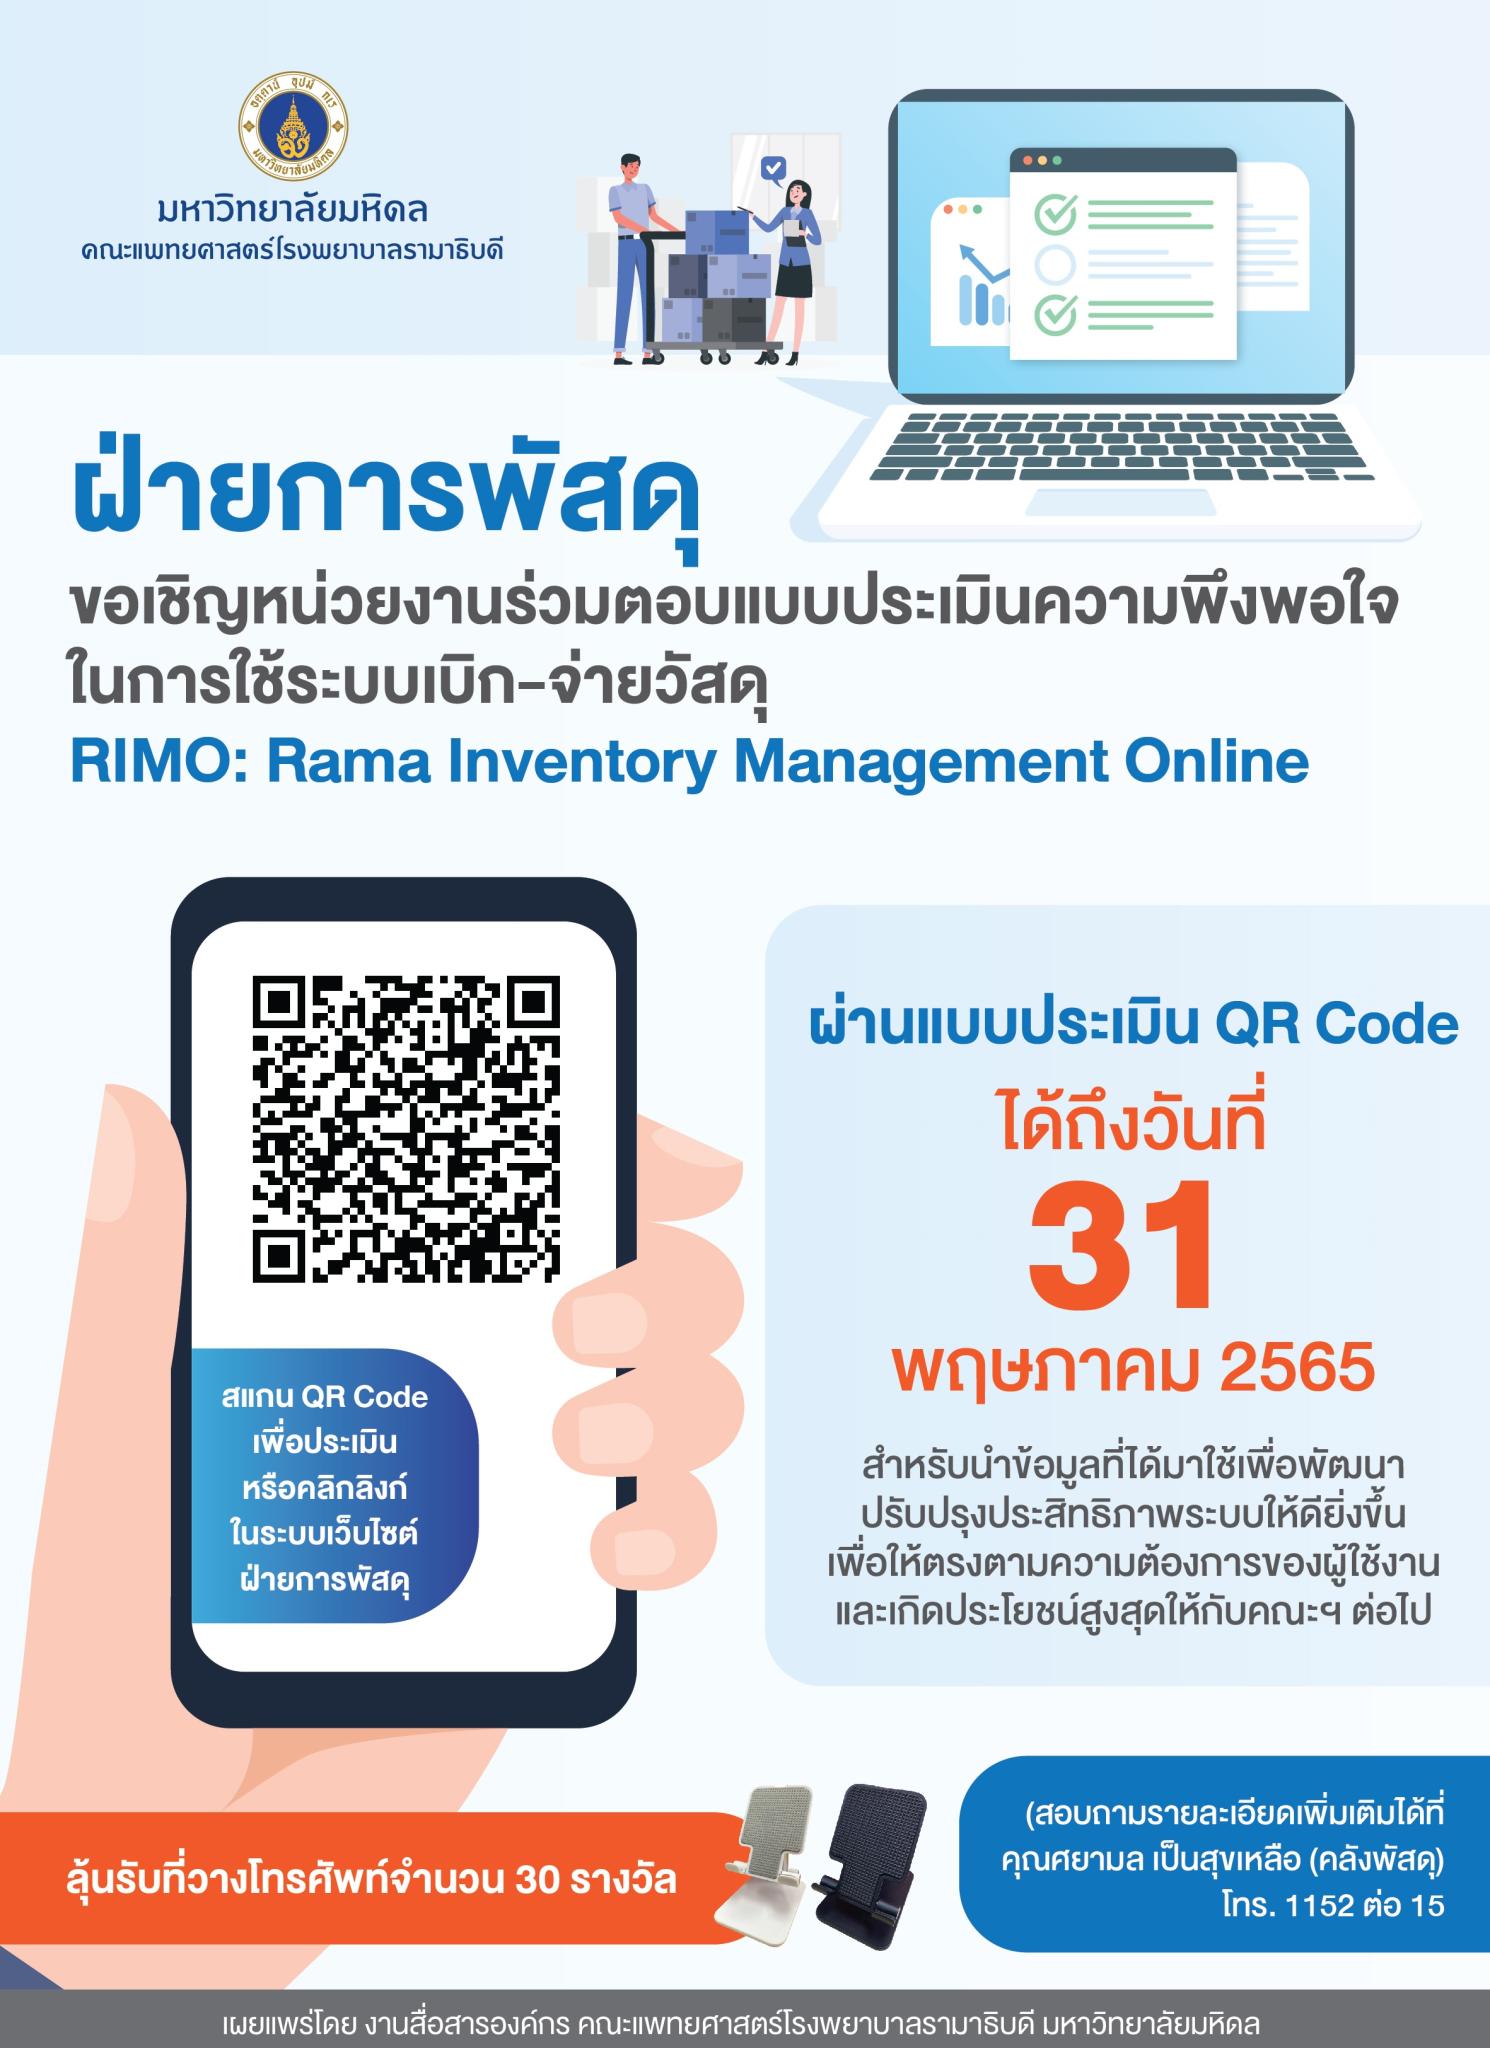 ขอเชิญหน่วยงานร่วมตอบแบบประเมินความพึงพอใจในการใช้ระบบเบิก-จ่ายวัสดุ RIMO: Rama Inventory Management Online